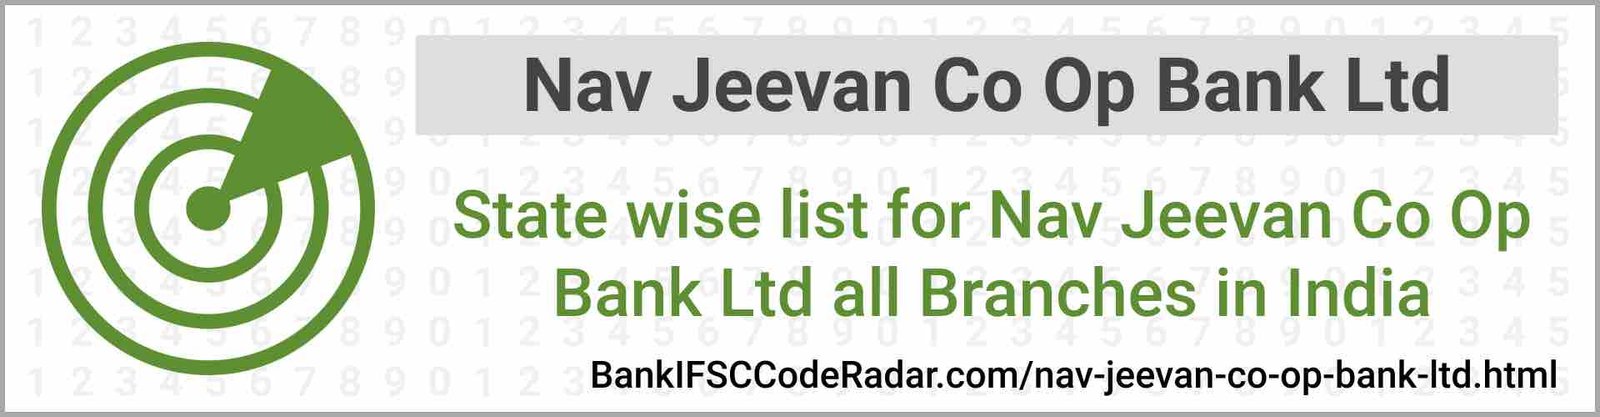 Nav Jeevan Co Op Bank Ltd All Branches India